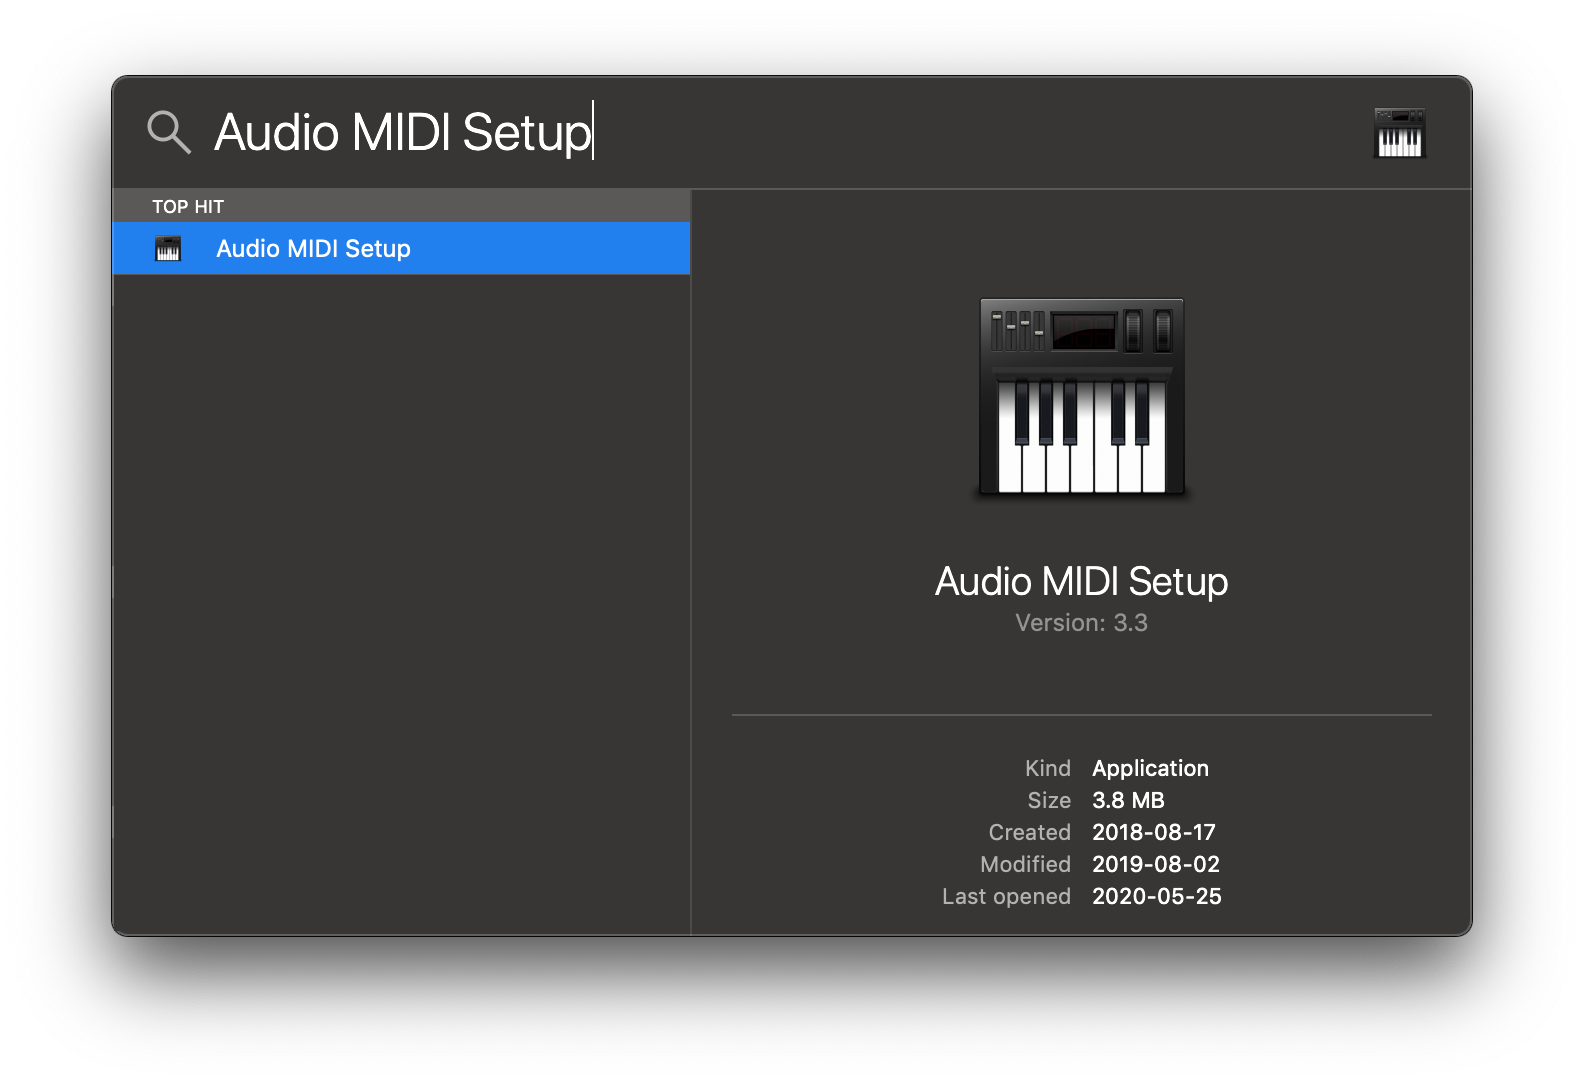 Open Audio MIDI Setup from Spotlight